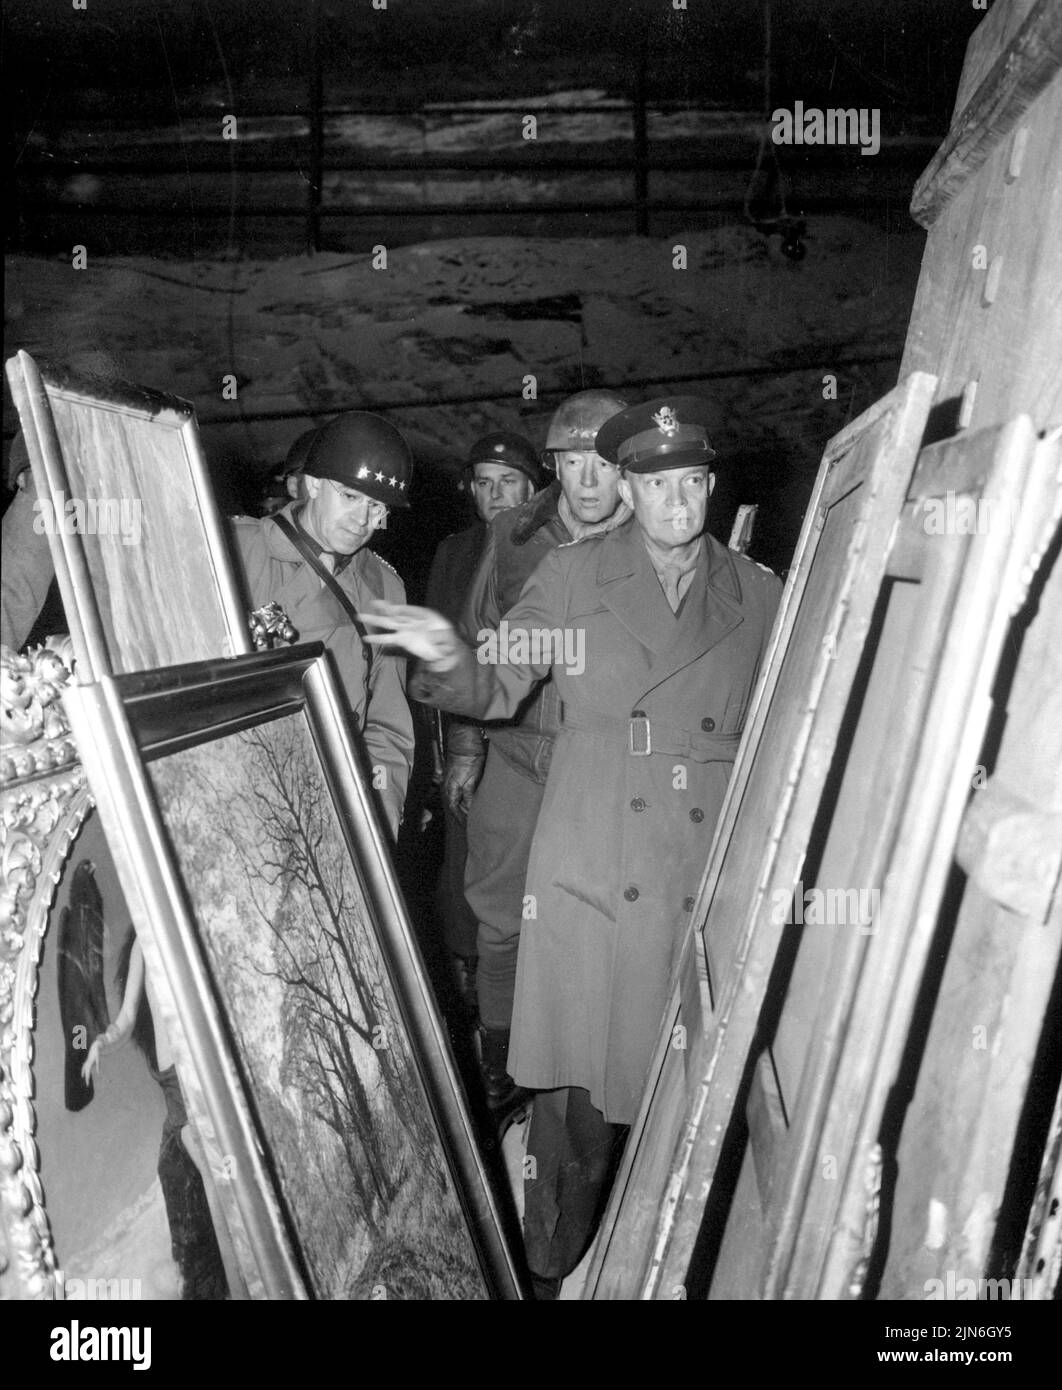 GERMANIA - 12 aprile 1945 - il generale dell'esercito americano Dwight D Eisenhower, comandante supremo alleato, accompagnato da Gen Omar N Bradley, e Lt Gen George S Patton Foto Stock